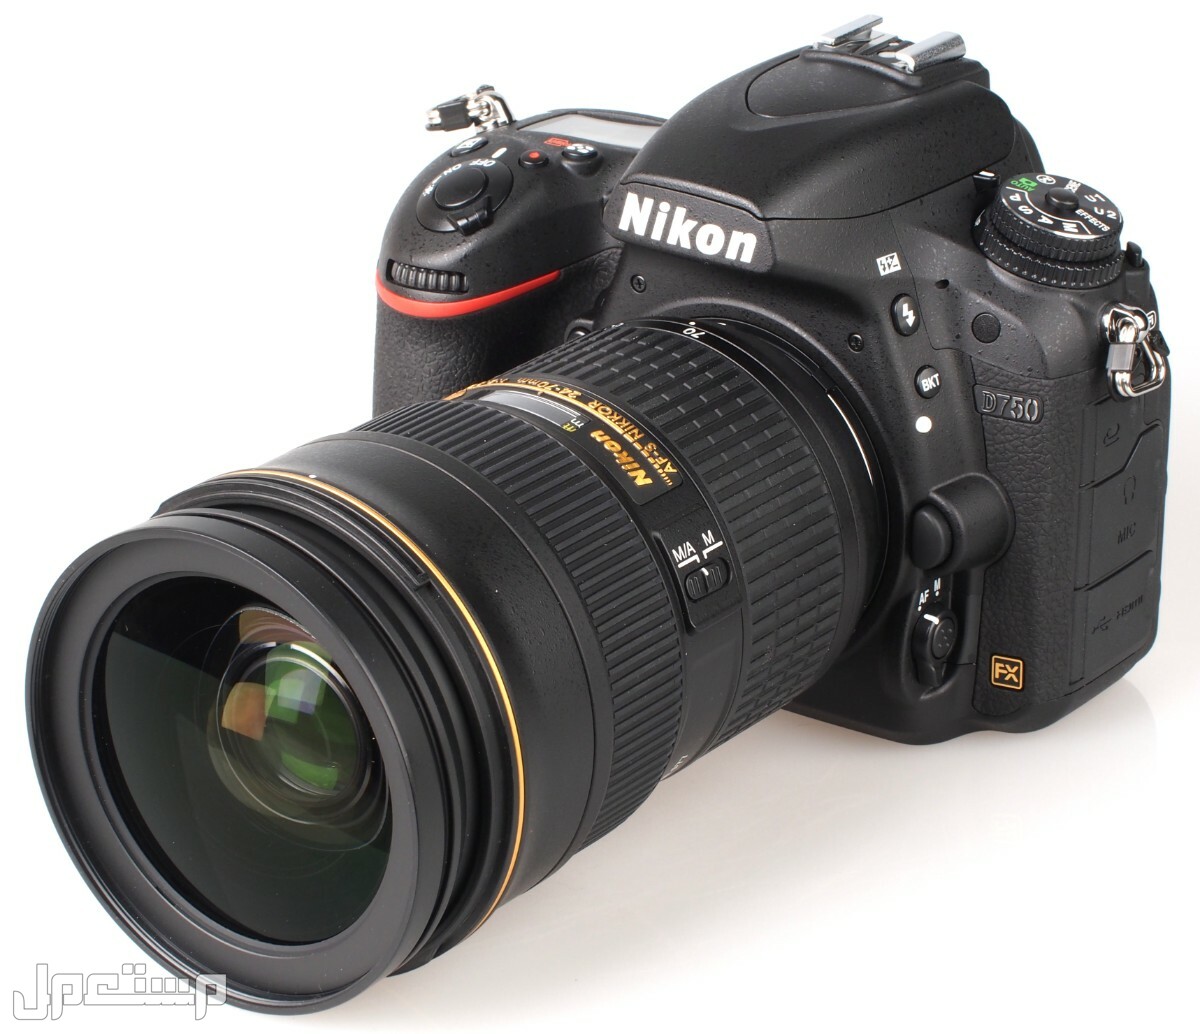 مواصفات ومميزات وأسعار أفضل أنواع كاميرات نيكون للمحترفين في موريتانيا كاميرا Nikon D750